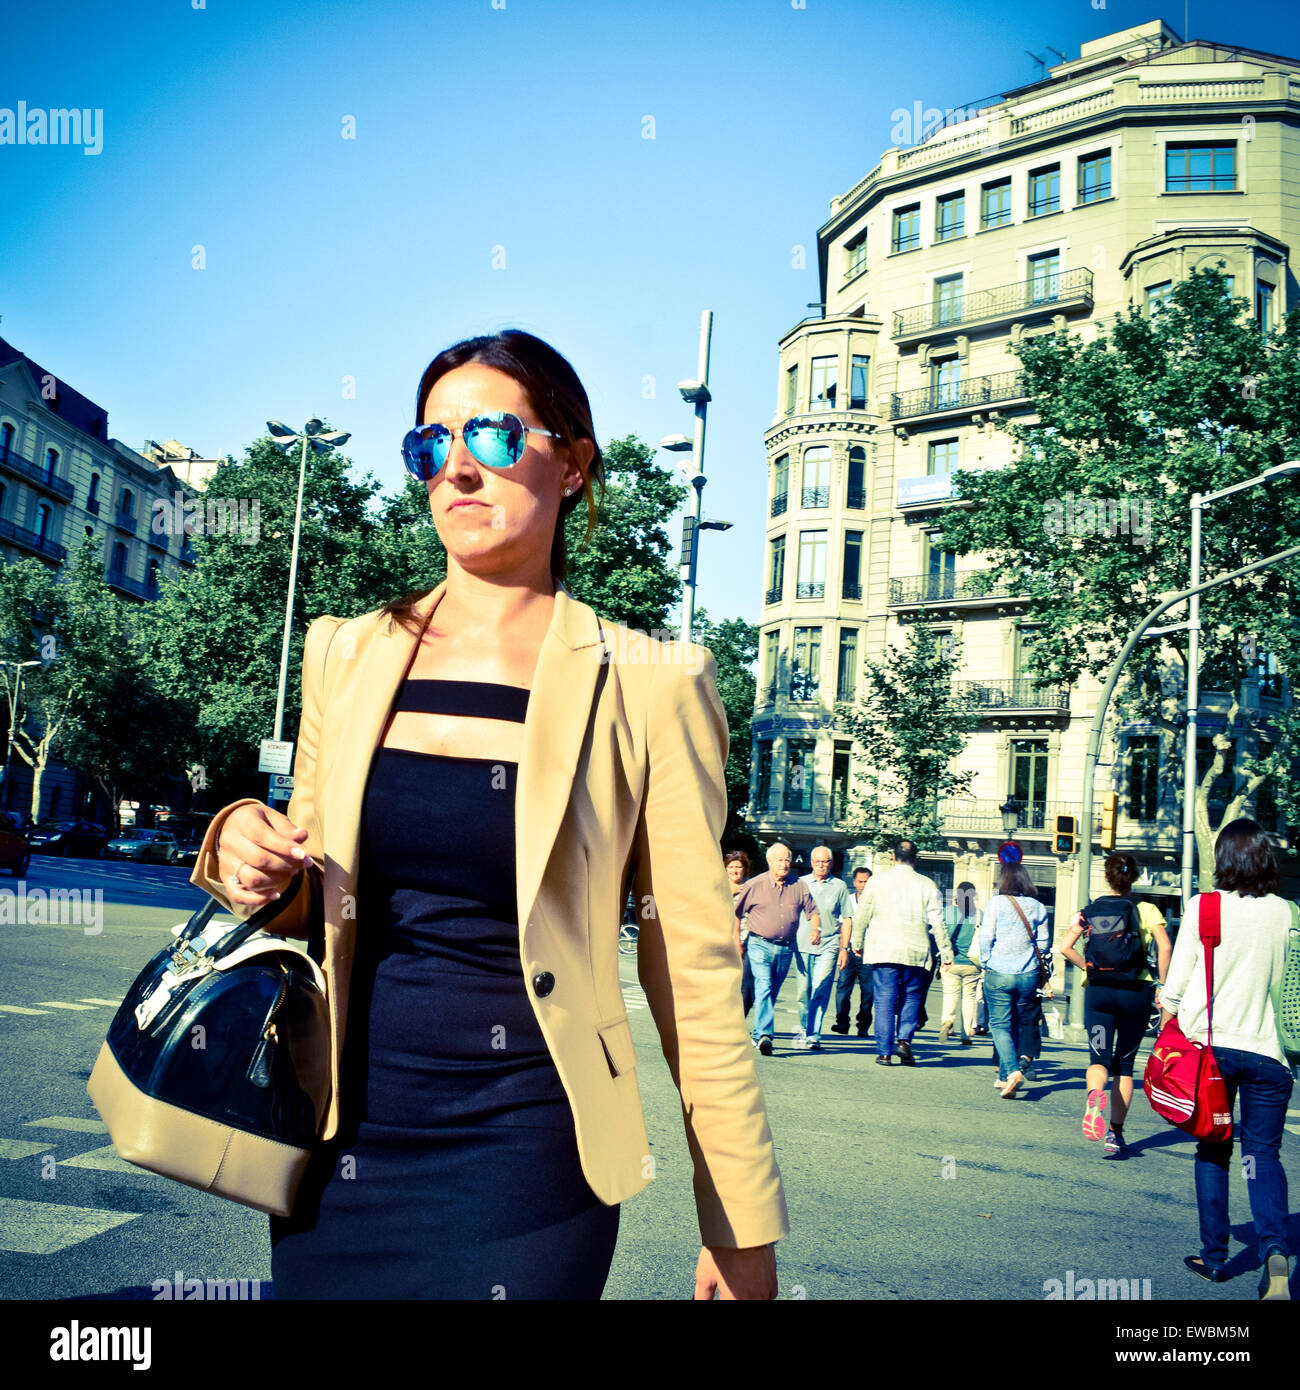 Molto elegante la donna, di tipo esecutivo con occhiali da sole. Barcellona, in Catalogna, Spagna. Foto Stock